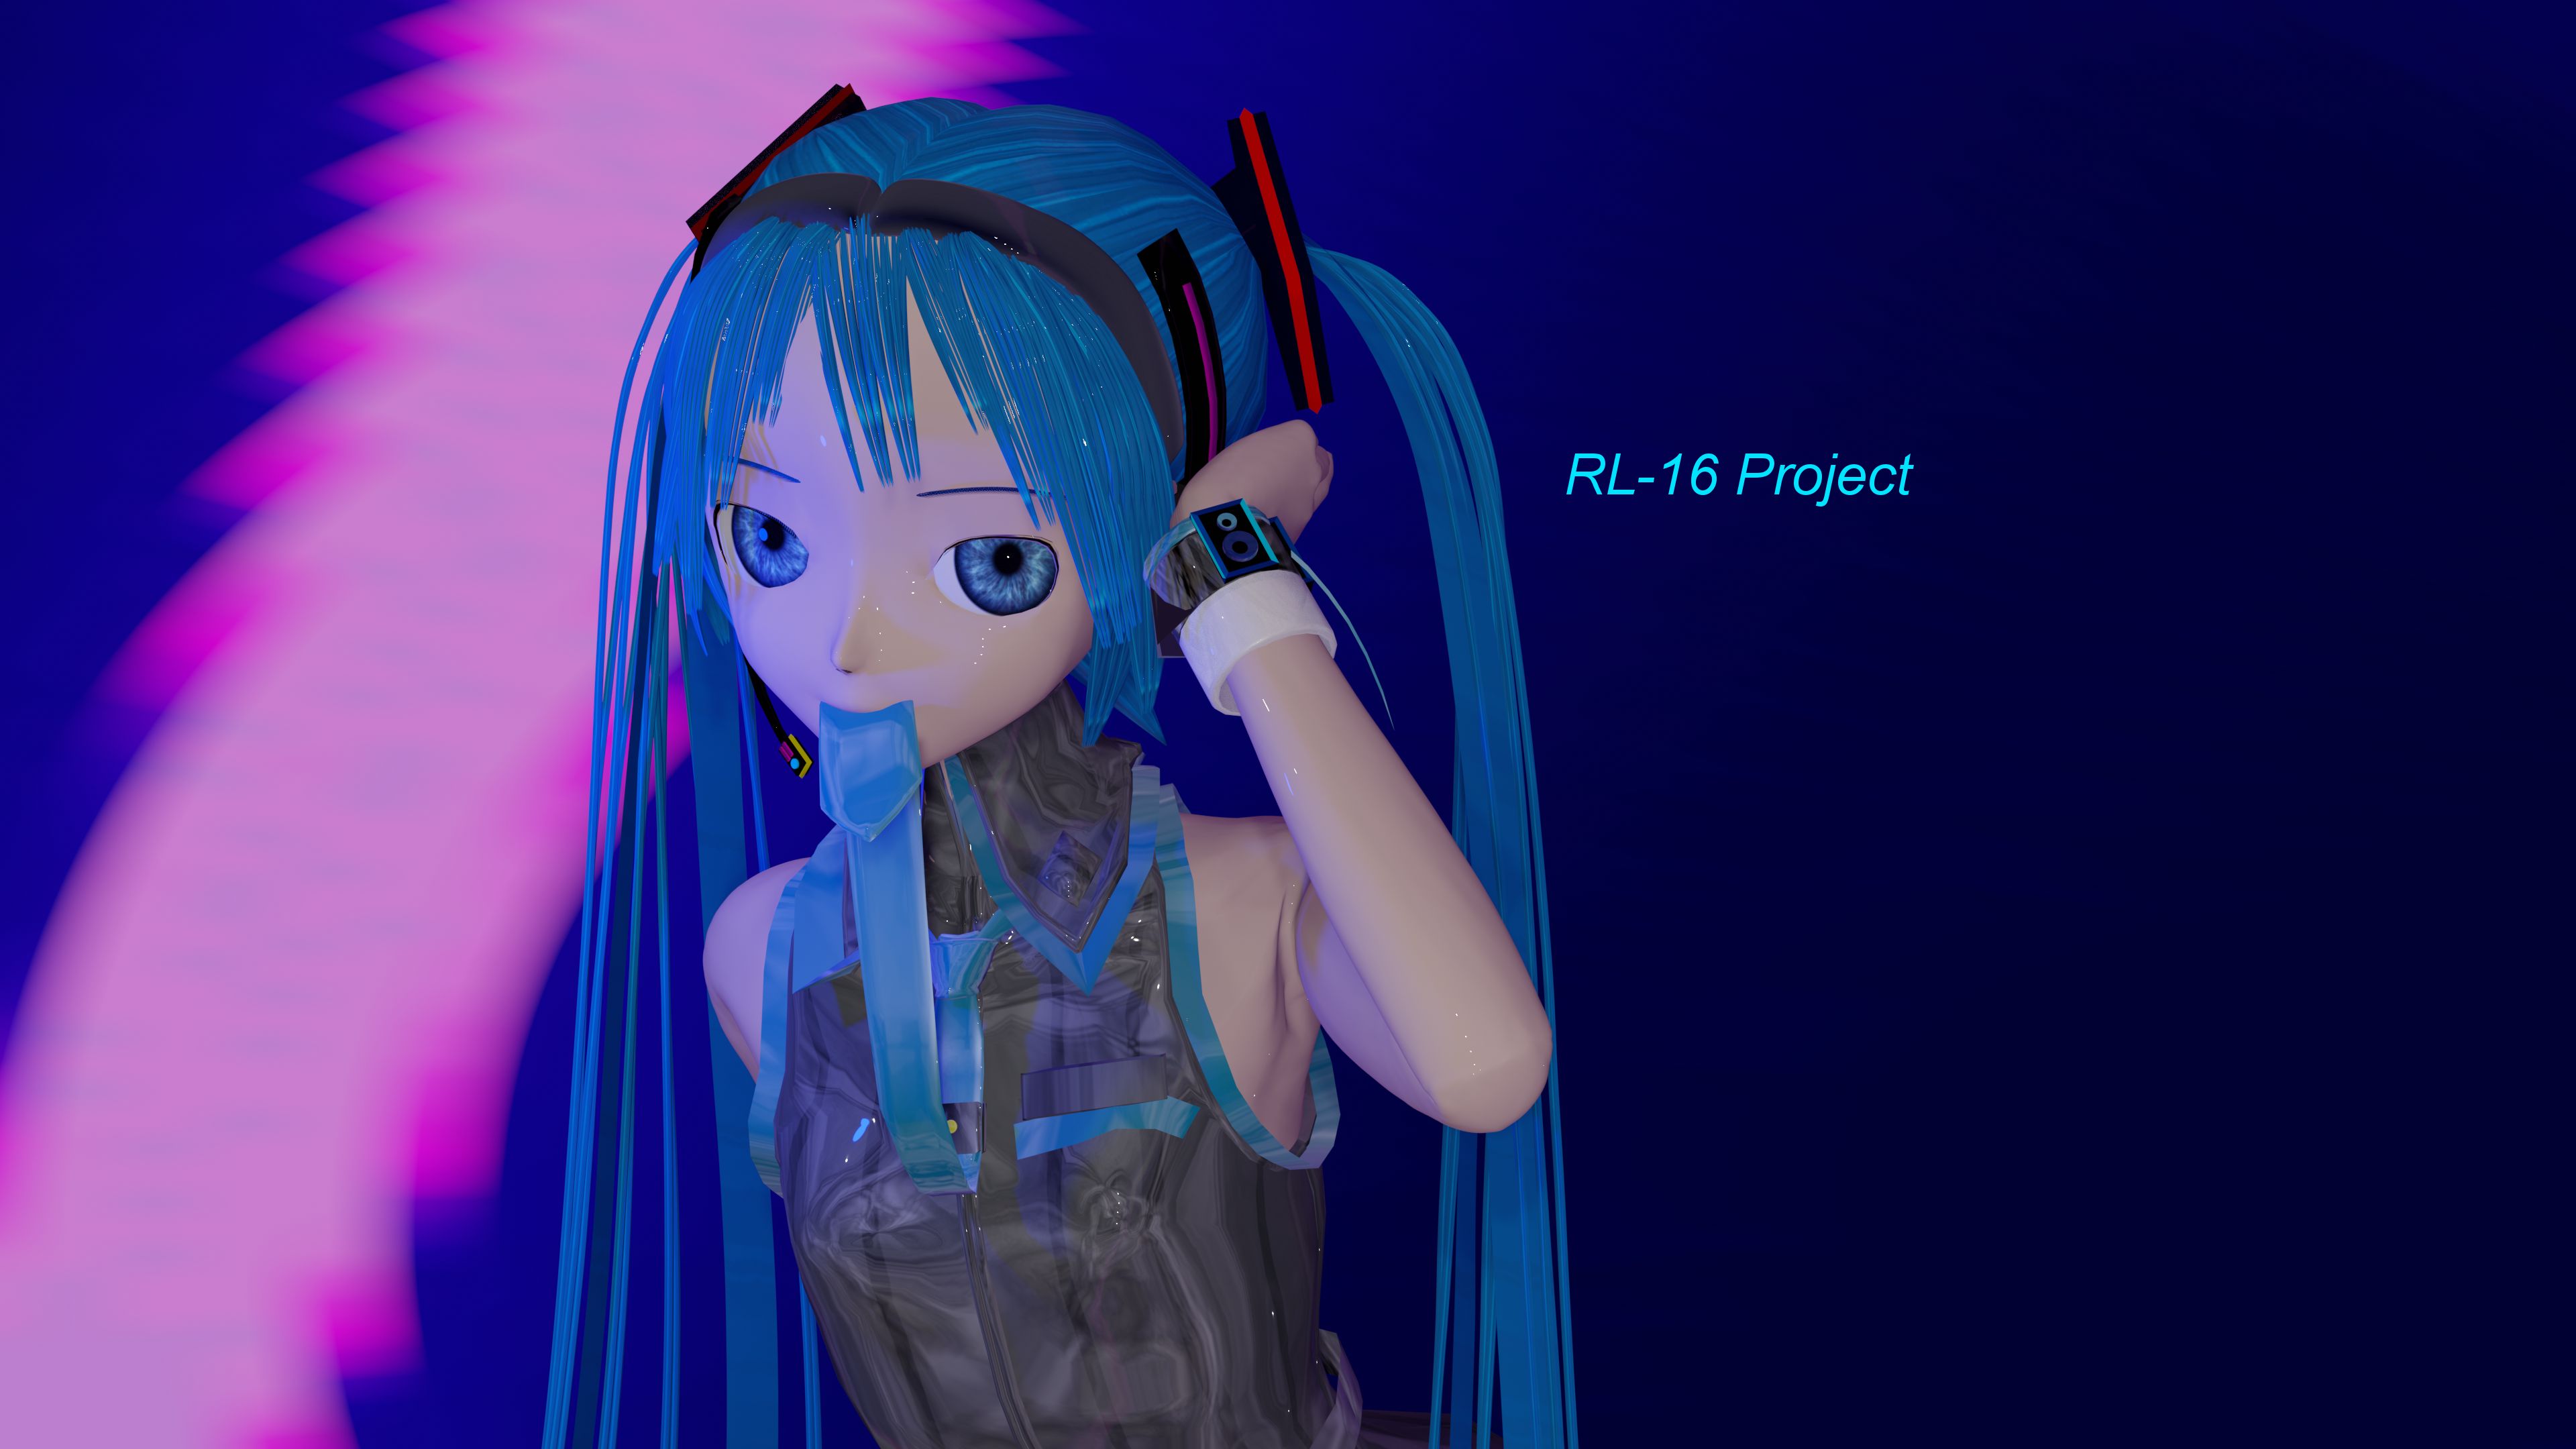 Download mobile wallpaper Anime, Vocaloid, Tie, Blue Hair, Hatsune Miku, Long Hair, Blender, Blender 3D for free.